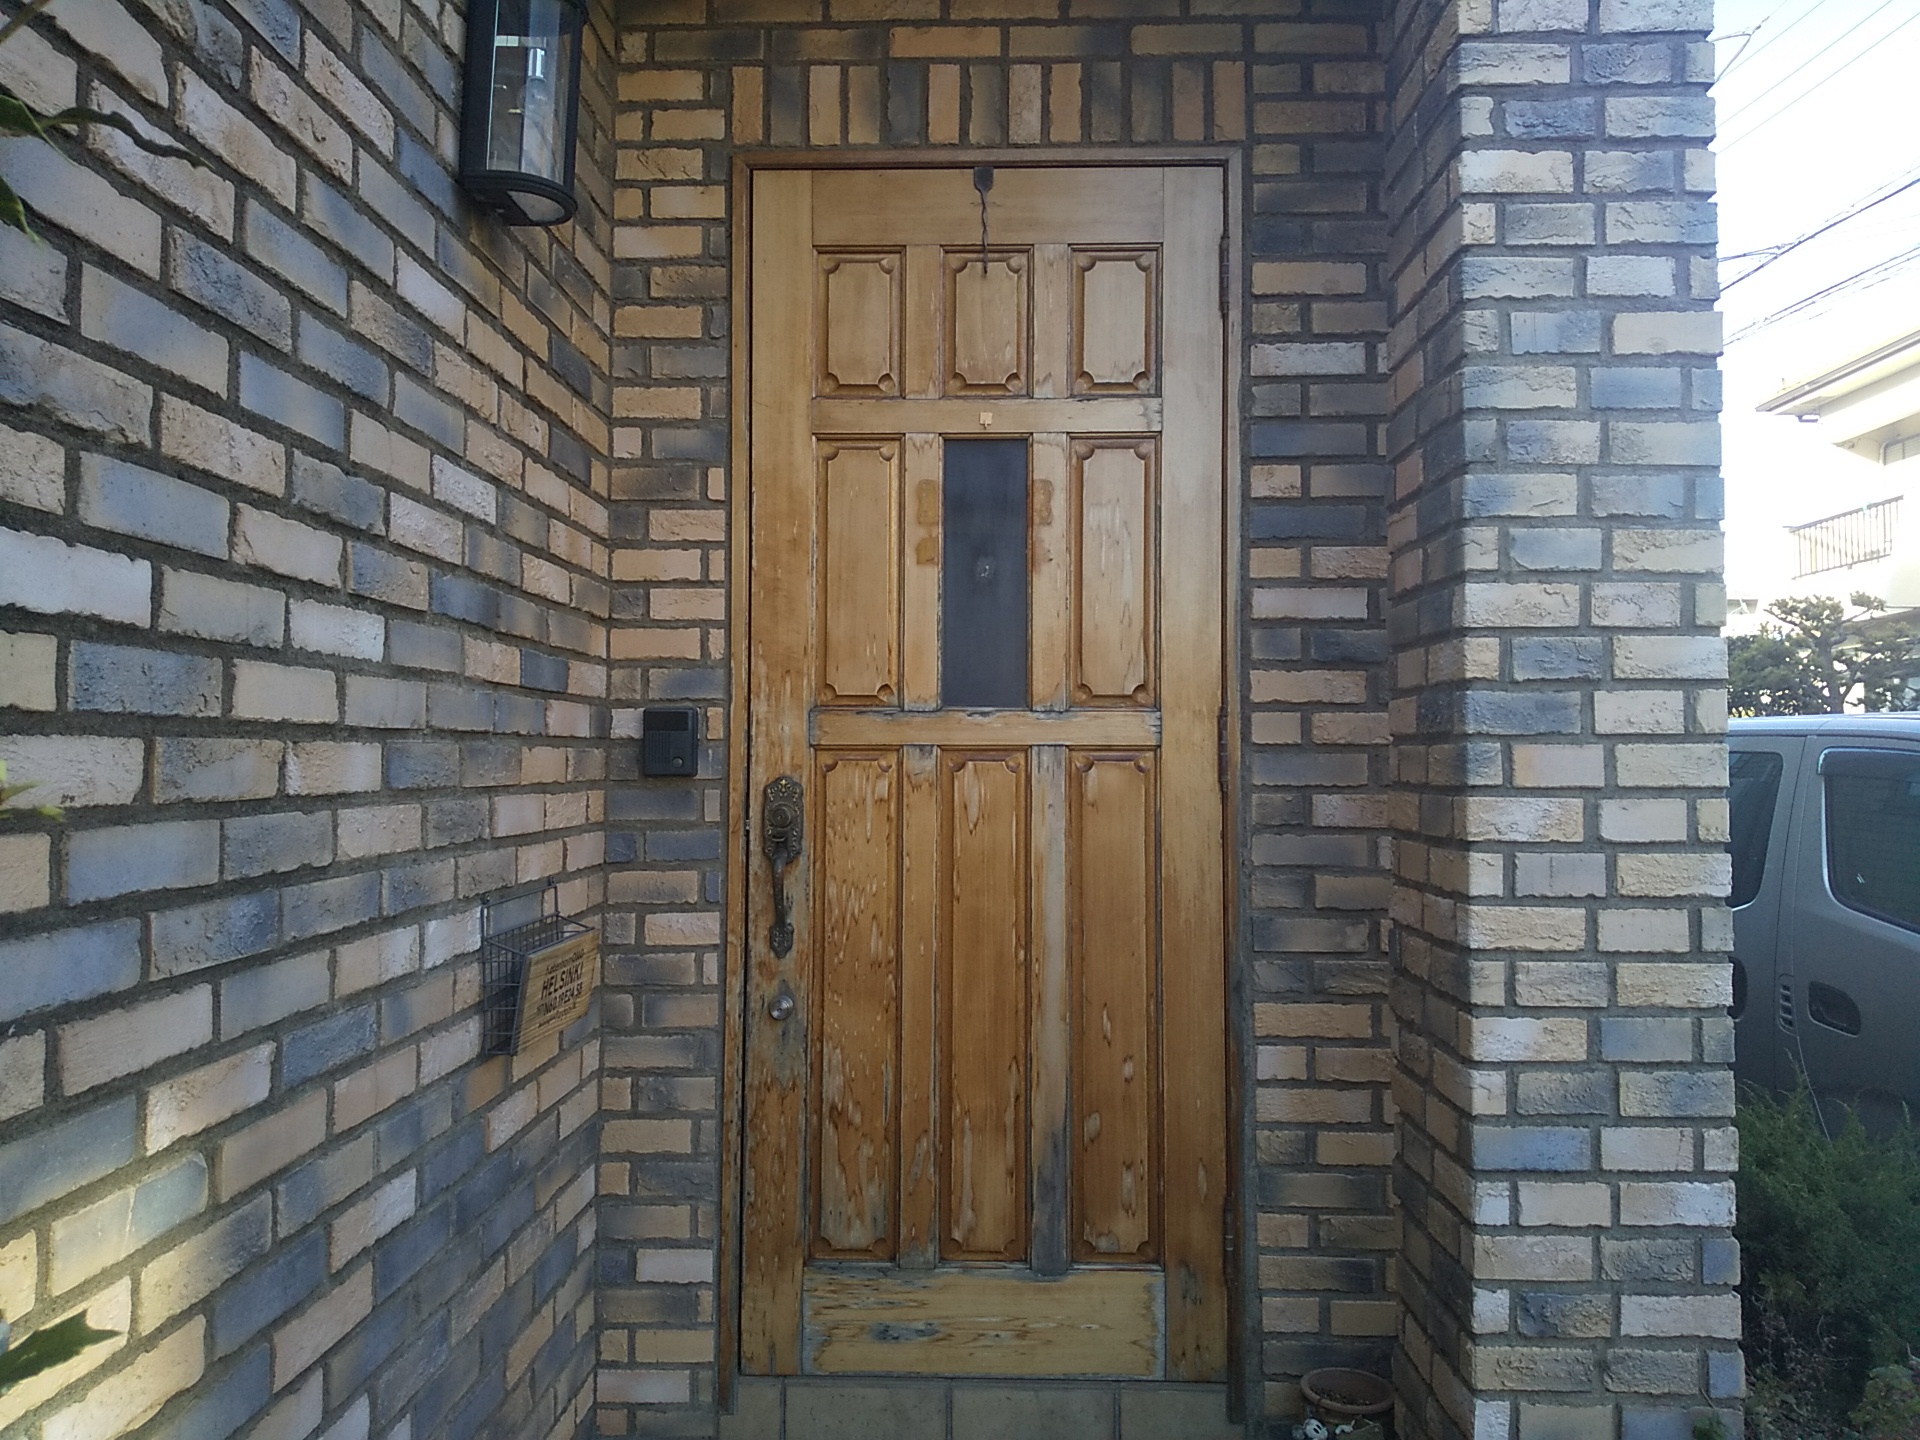 柄が多い外壁にはシンプルな色のドアが合います Lixilリシェントd77型 玄関ドアのリフォームなら玄関ドアマイスターへお任せください